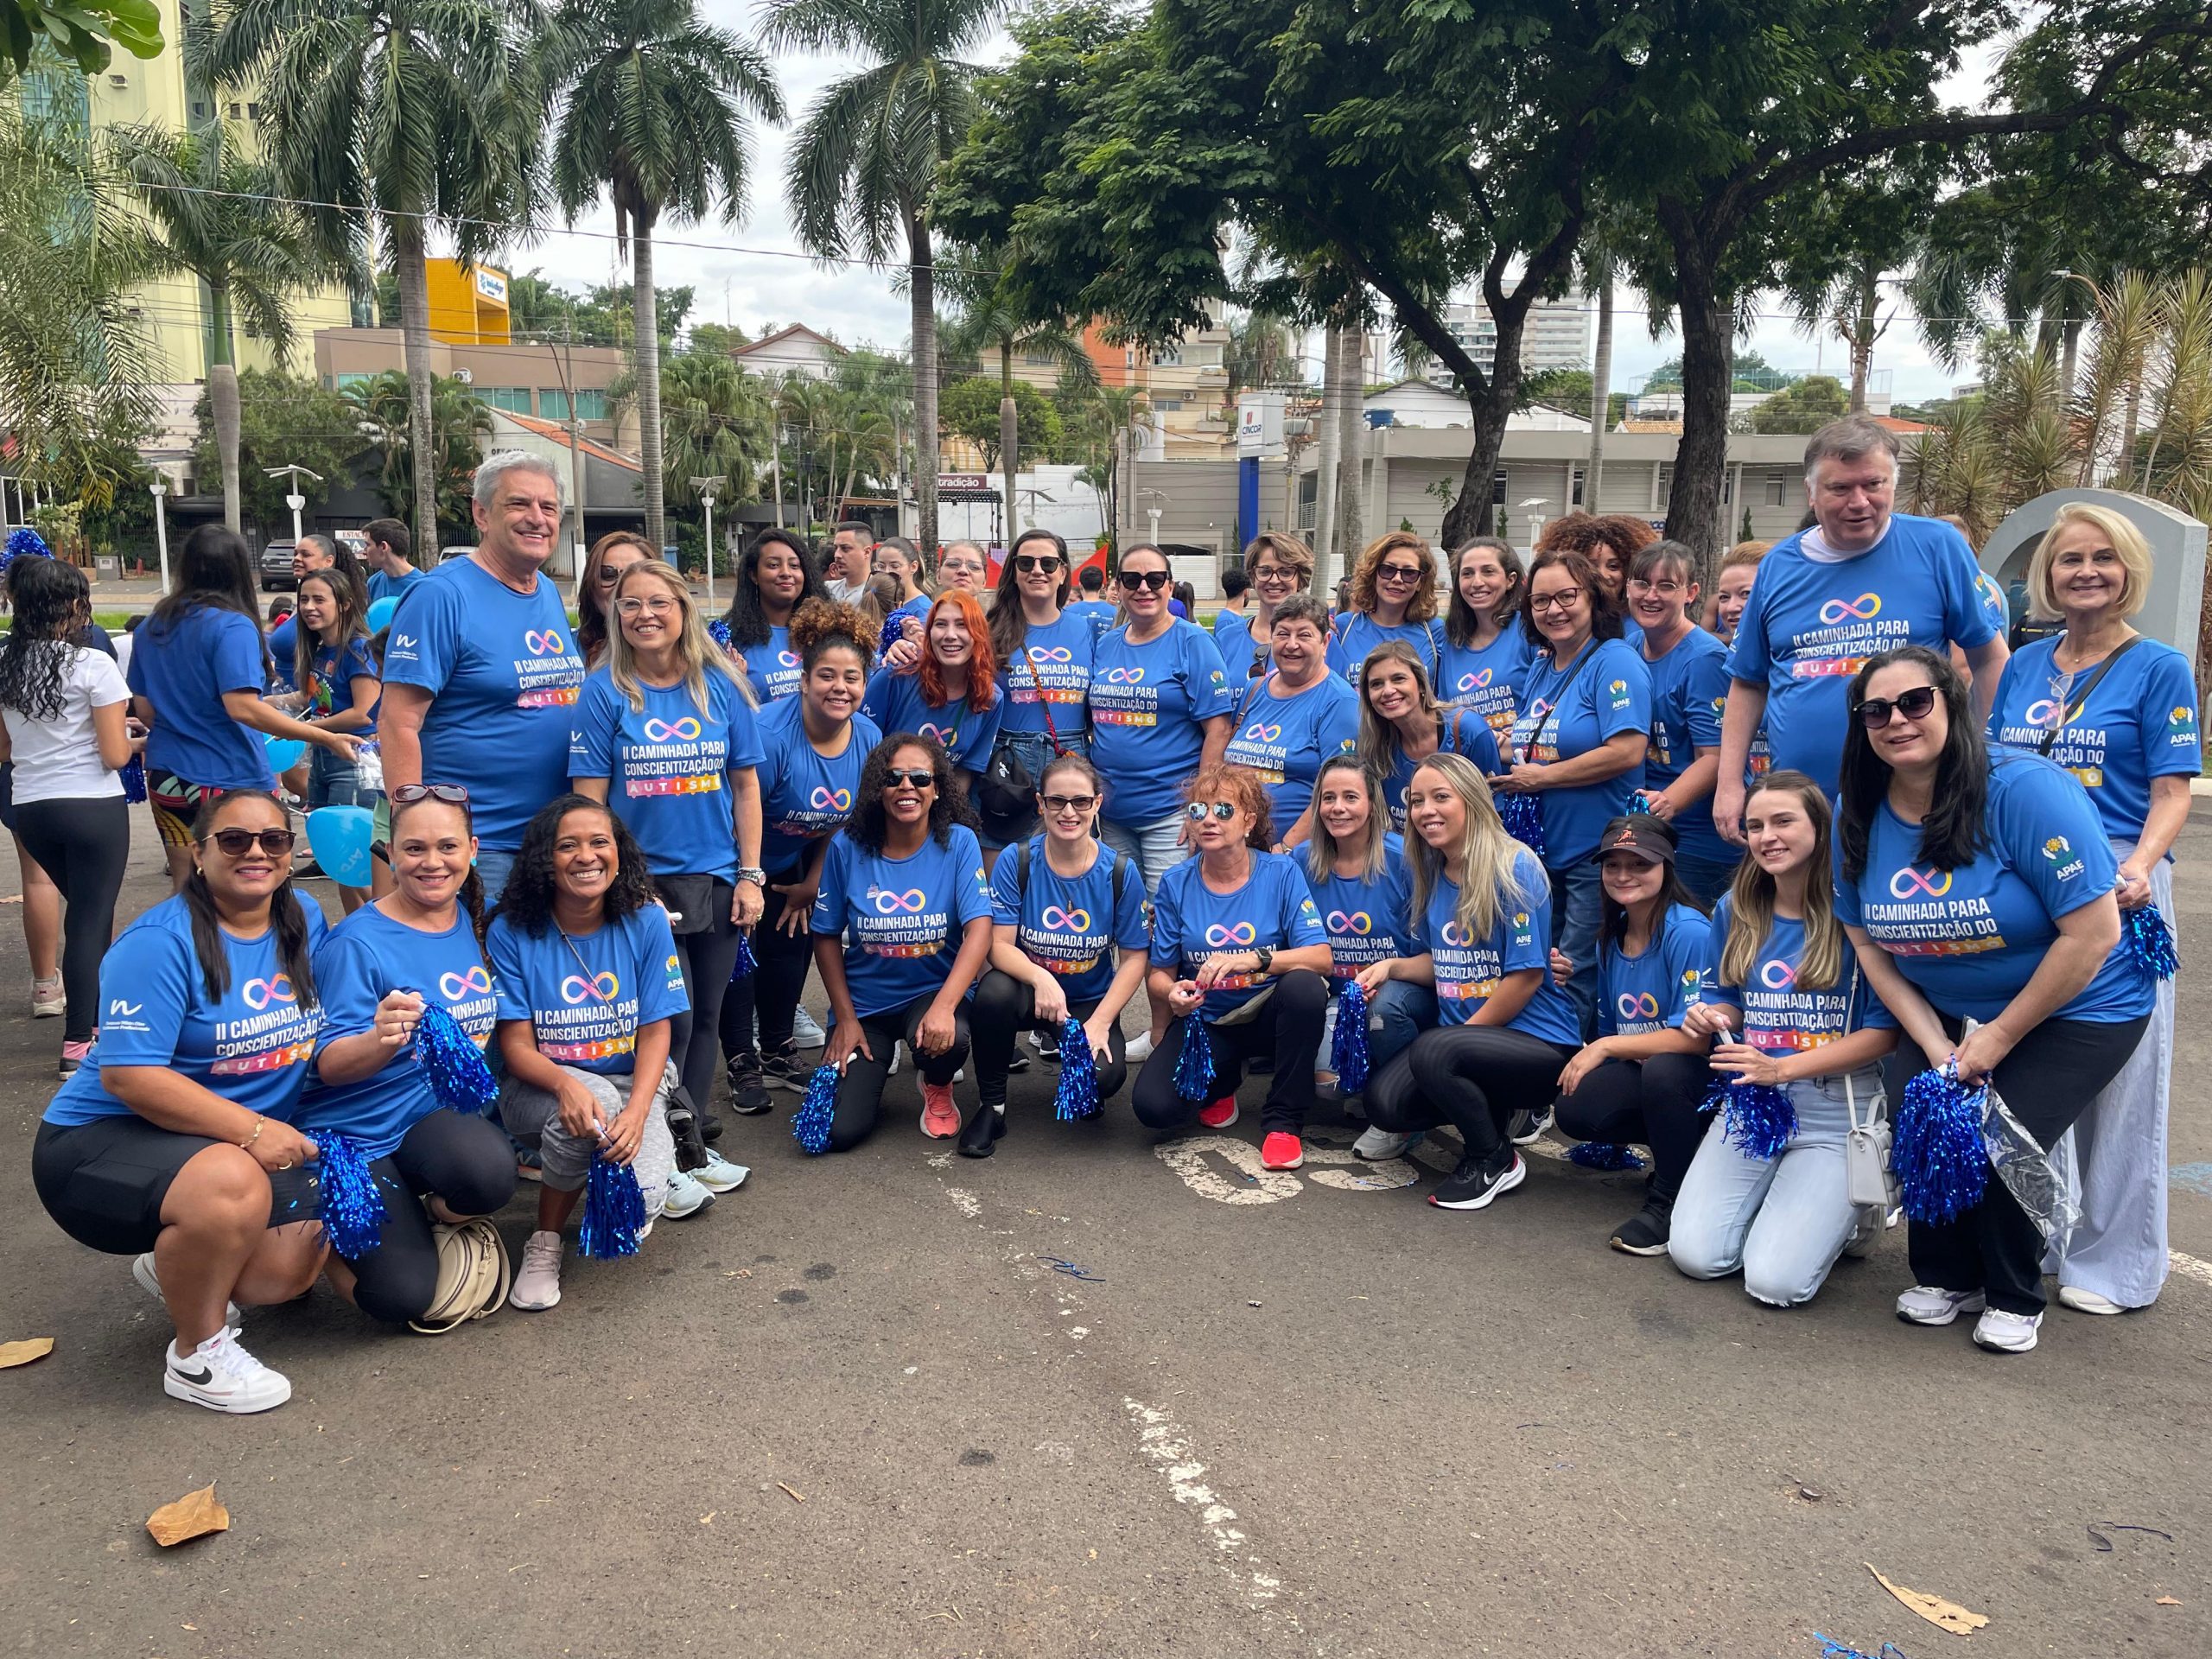 Participantes perfilados ao lado do secretário Marcos da Costa. Todos vestem camisa azul da 2ª Caminhada de Conscientização do Autismo em Americana